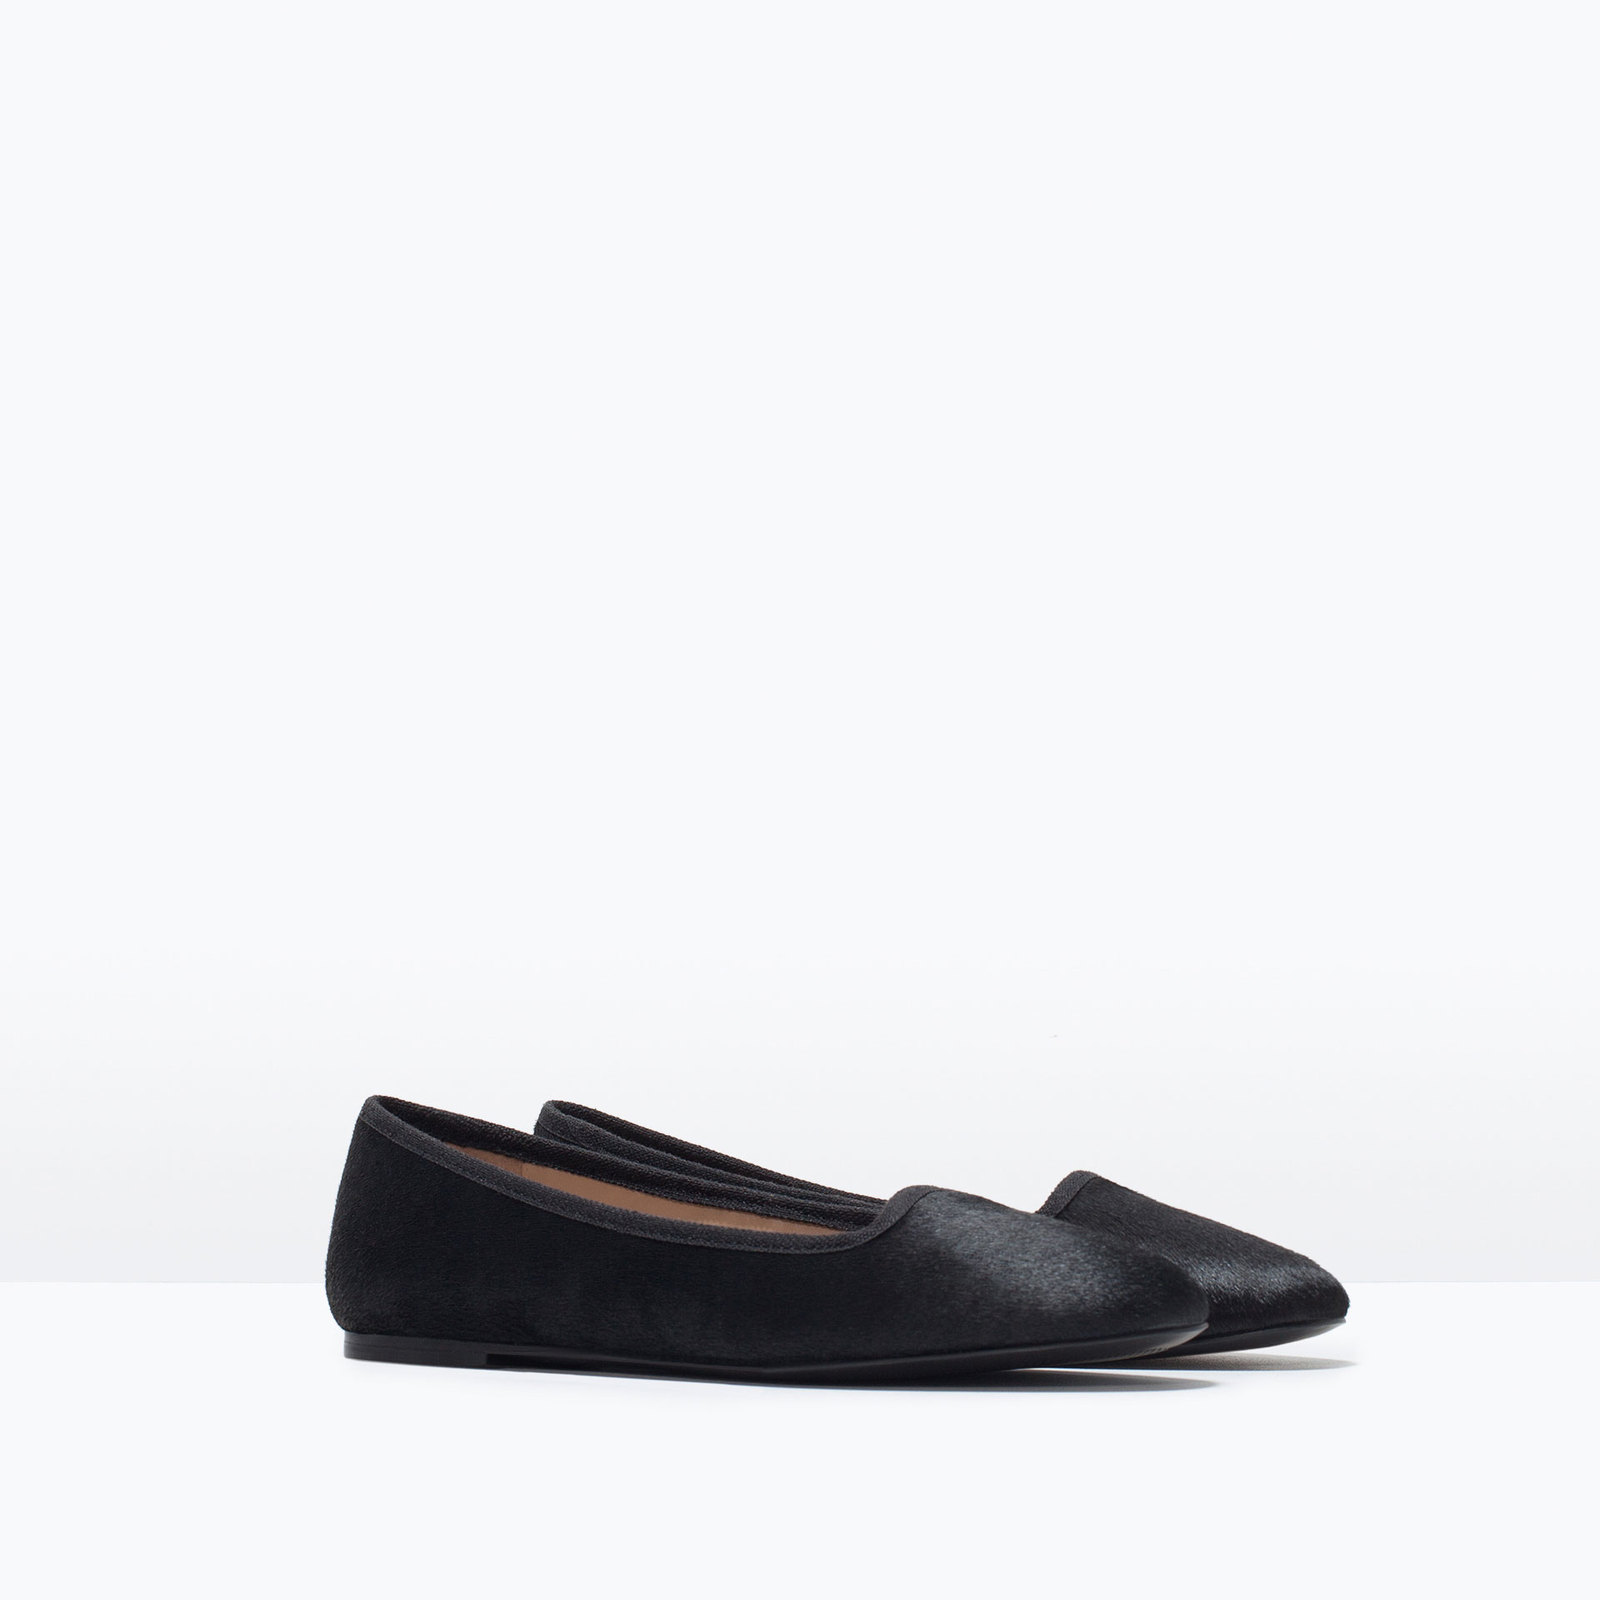 Zara fekete bőr slip-on cipő 2015 fotója